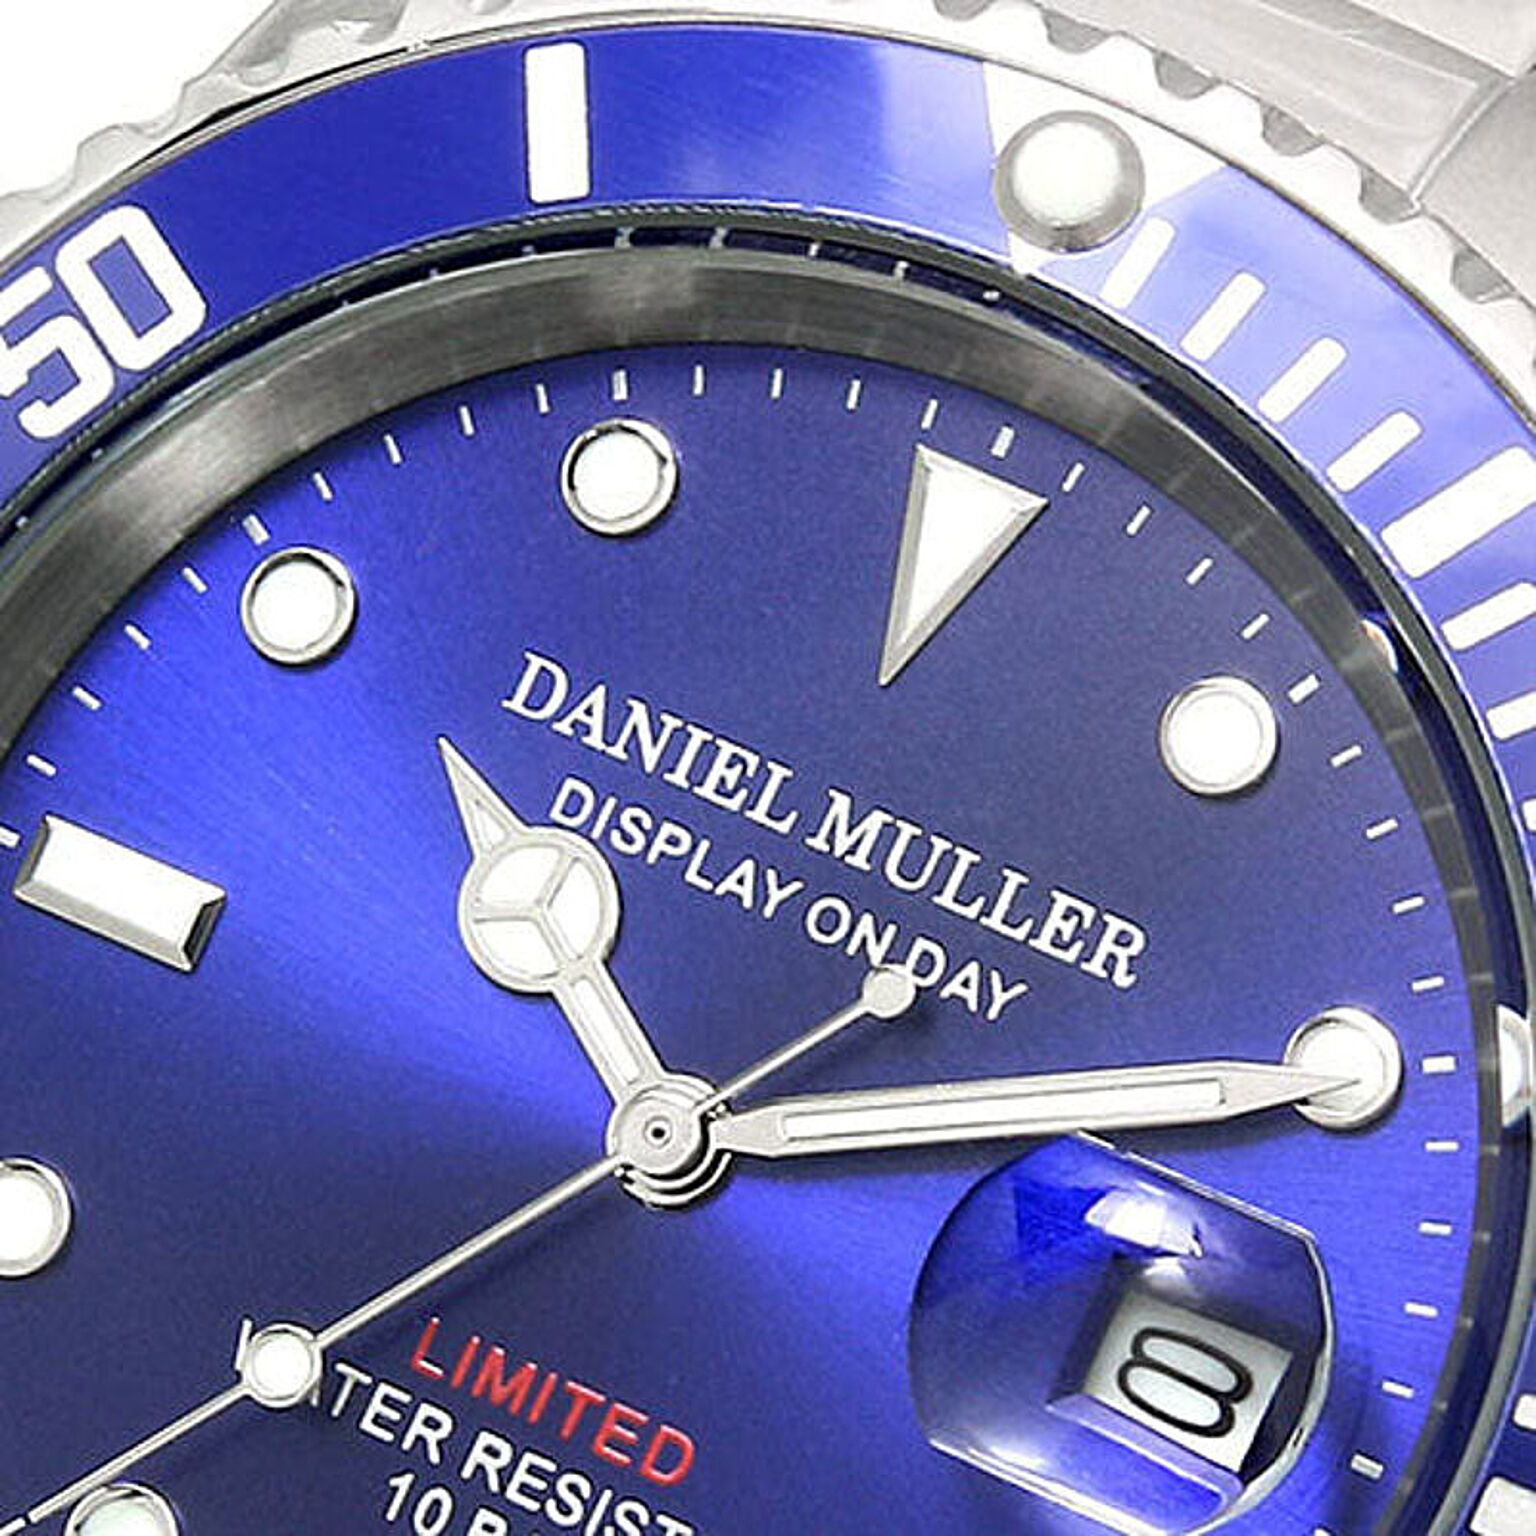 Daniel Muller ダニエルミューラー 腕時計 ステンレス製 100m防水 ダイバーズウォッチ ブルー Dm 18bl 通販 Roomclipショッピング